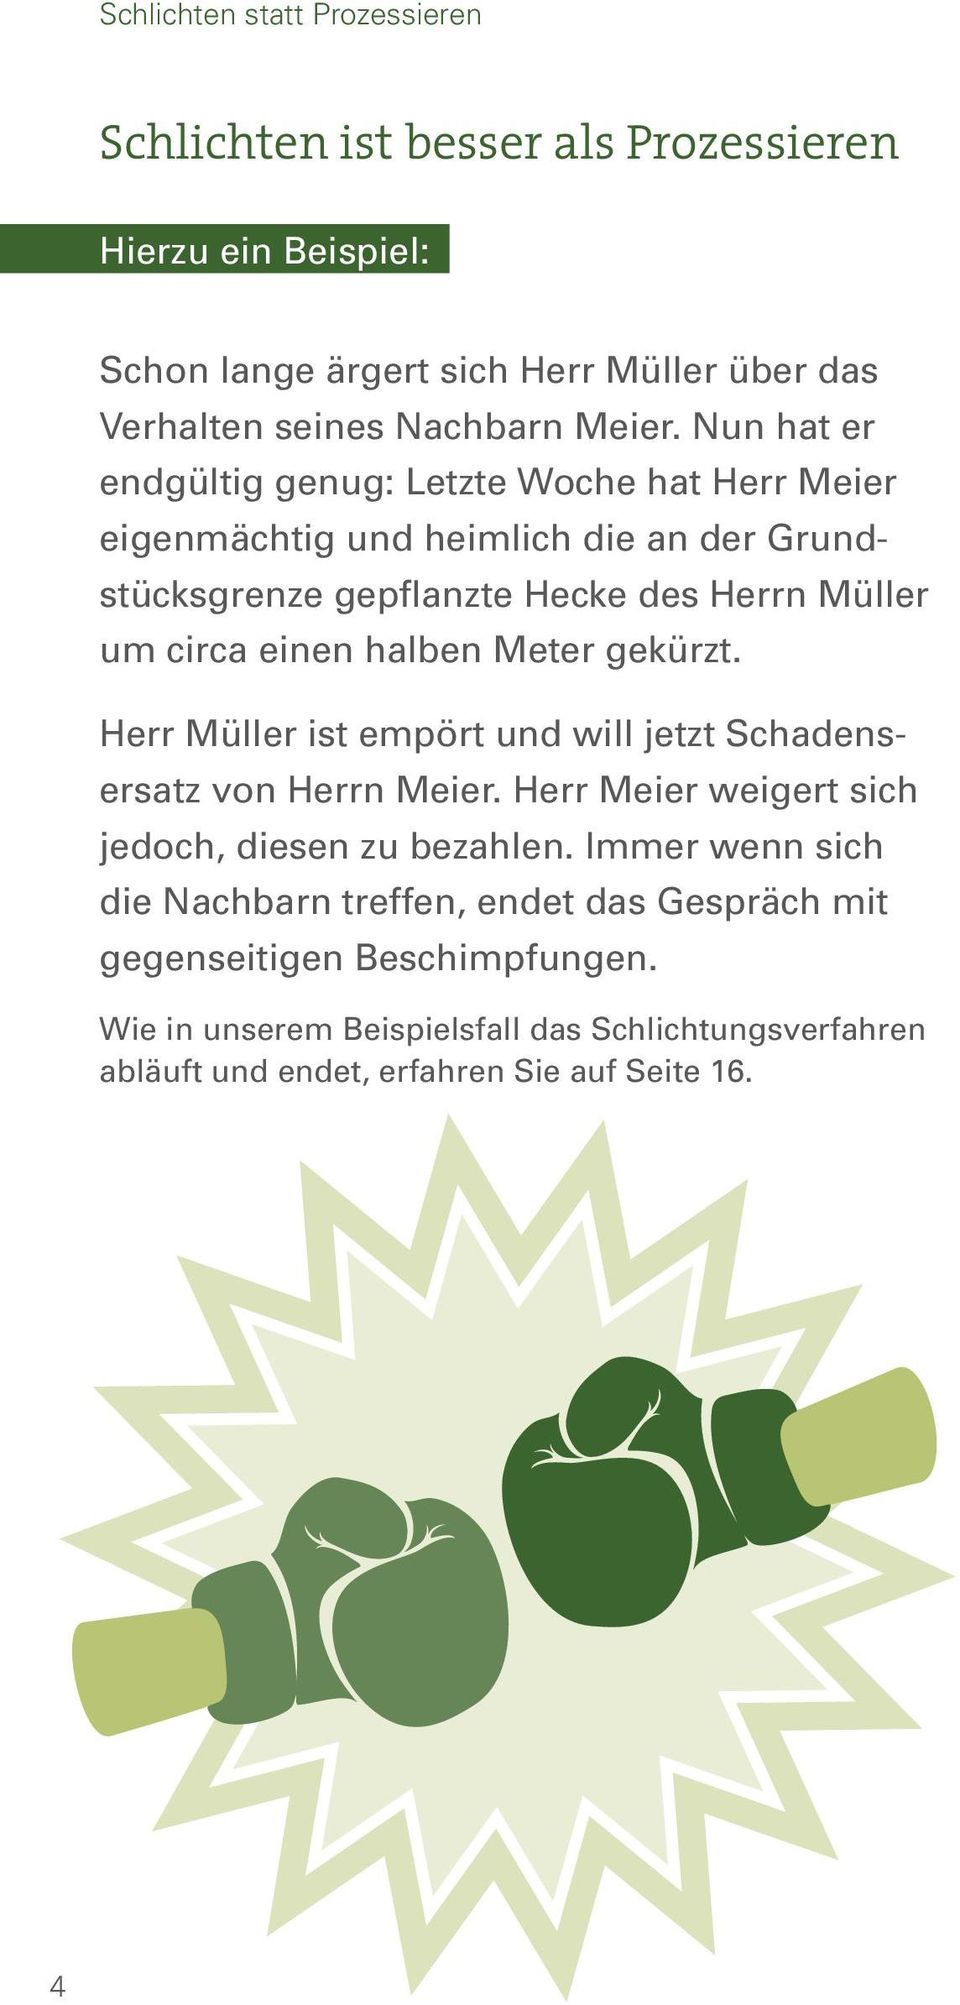 Meter gekürzt. Herr Müller ist empört und will jetzt Schadensersatz von Herrn Meier. Herr Meier weigert sich jedoch, diesen zu bezahlen.